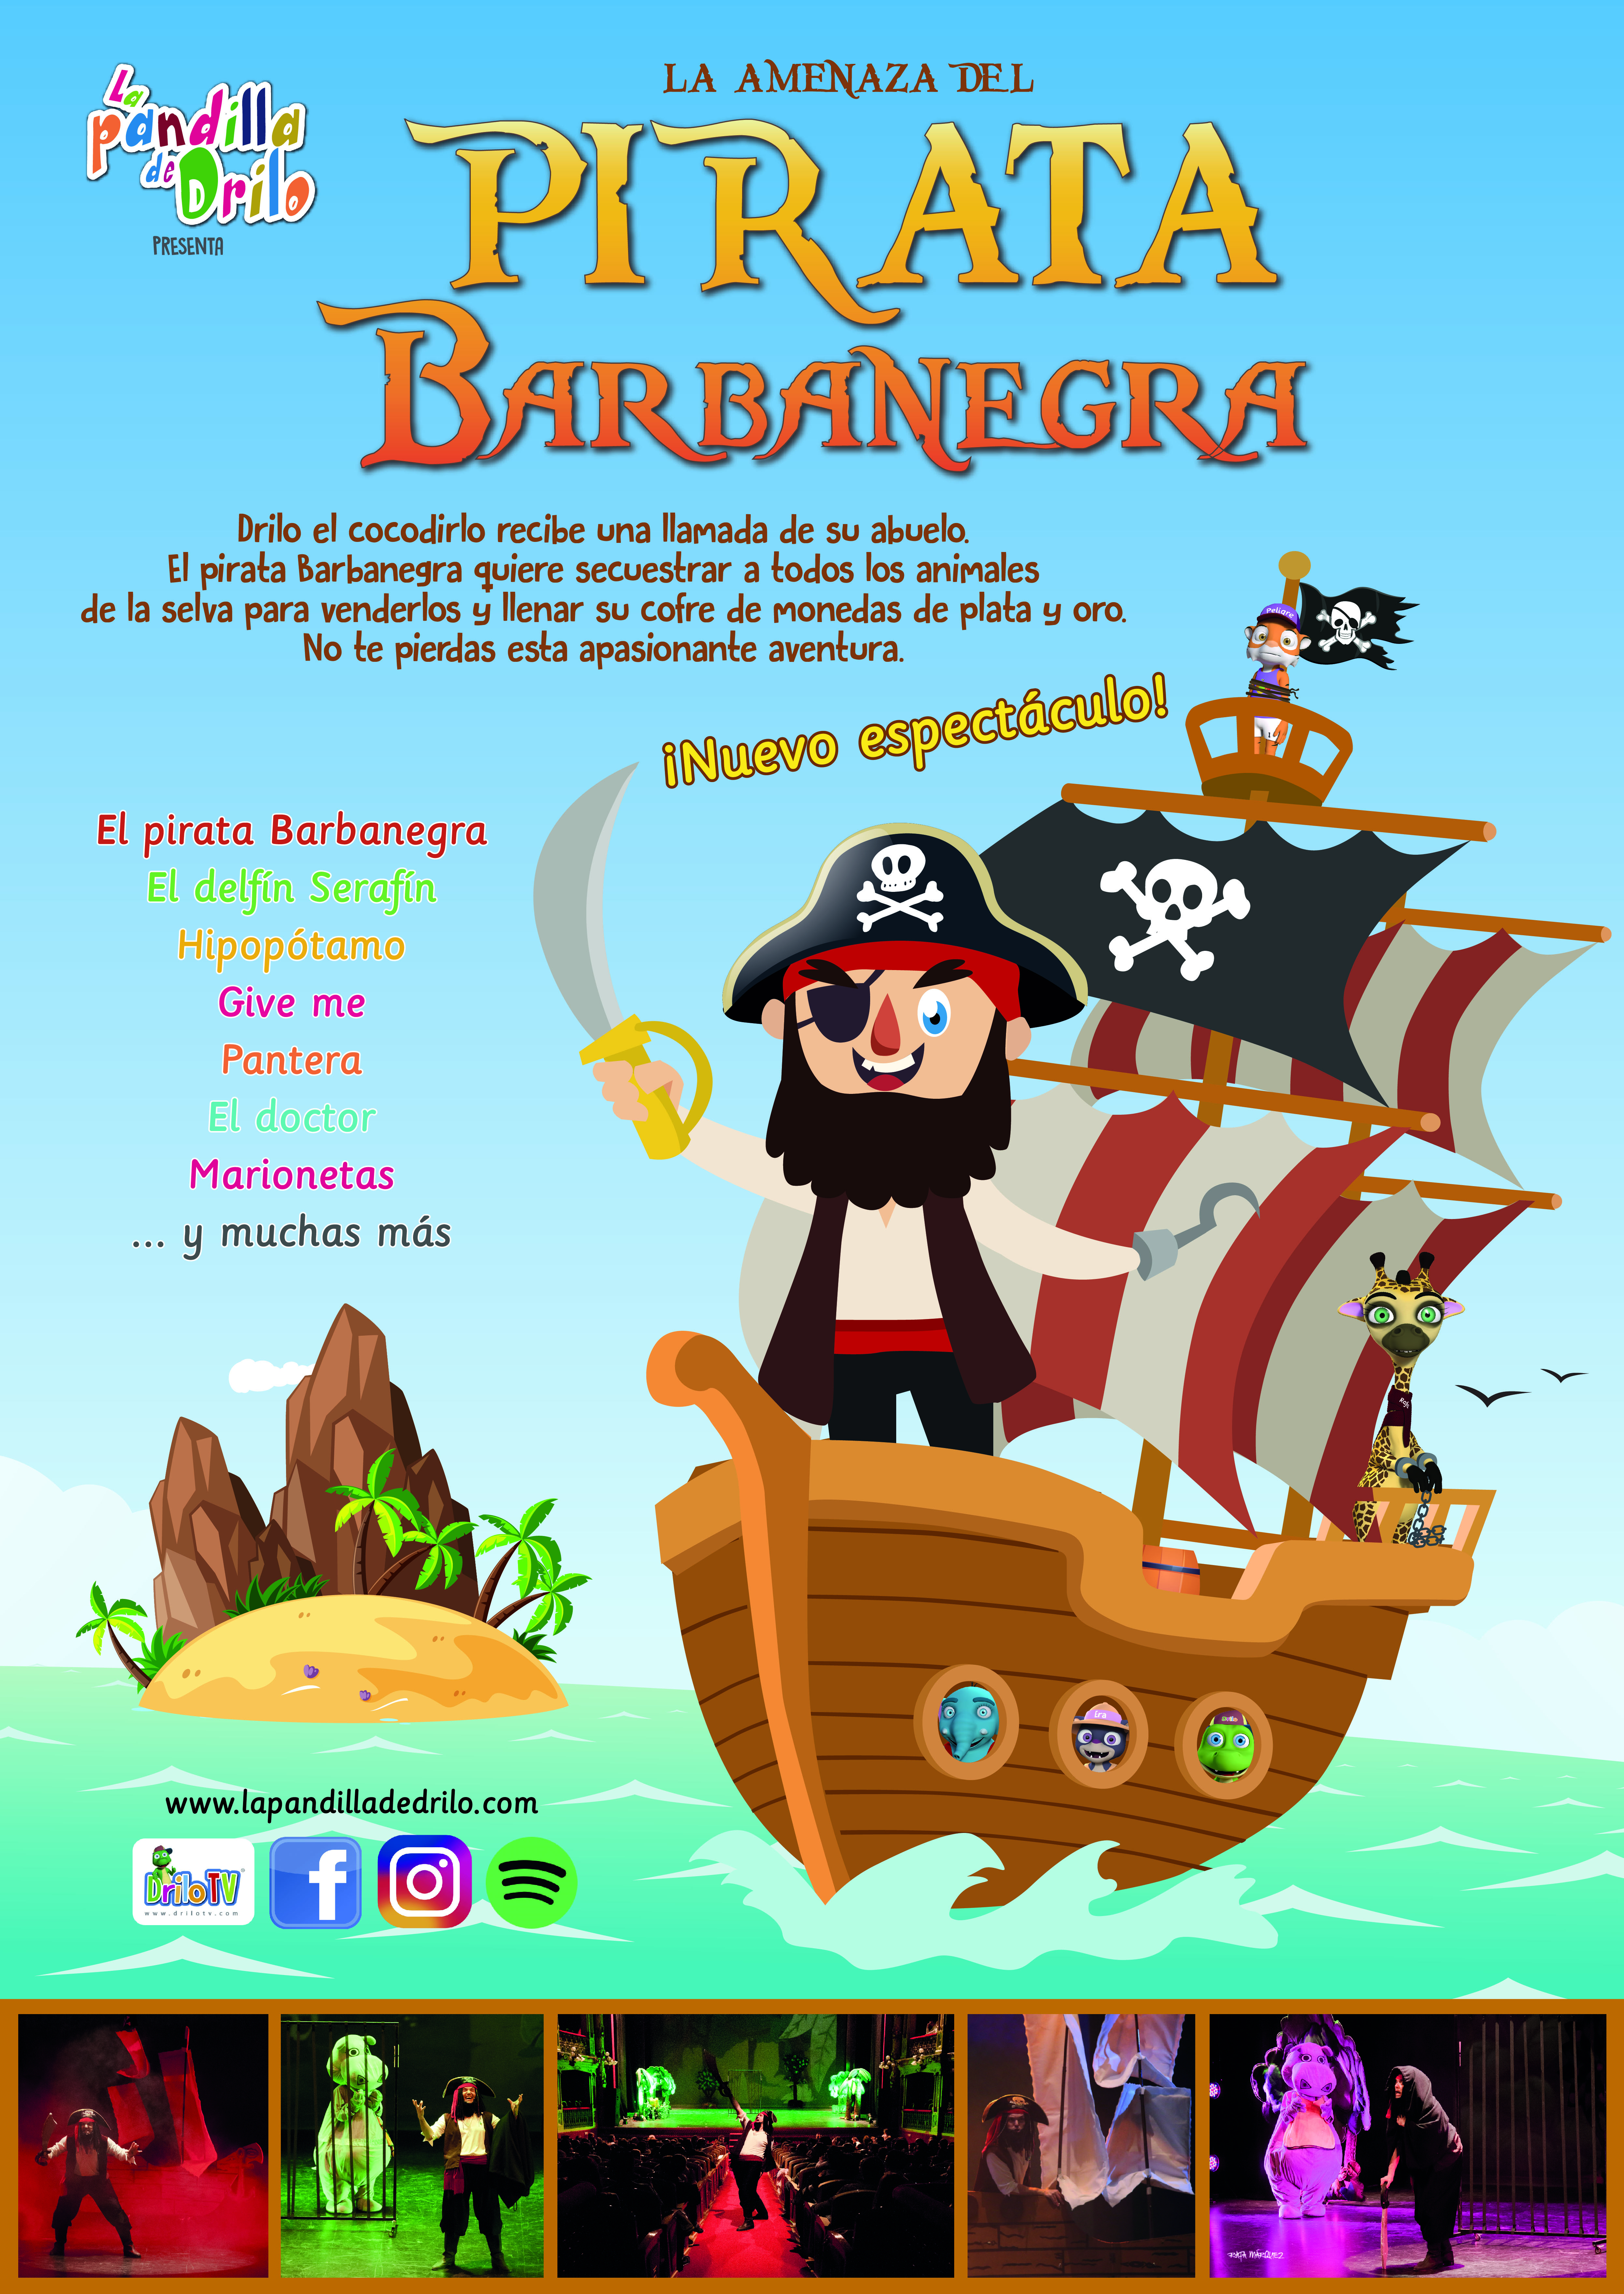 La amenaza del pirata Barbanegra